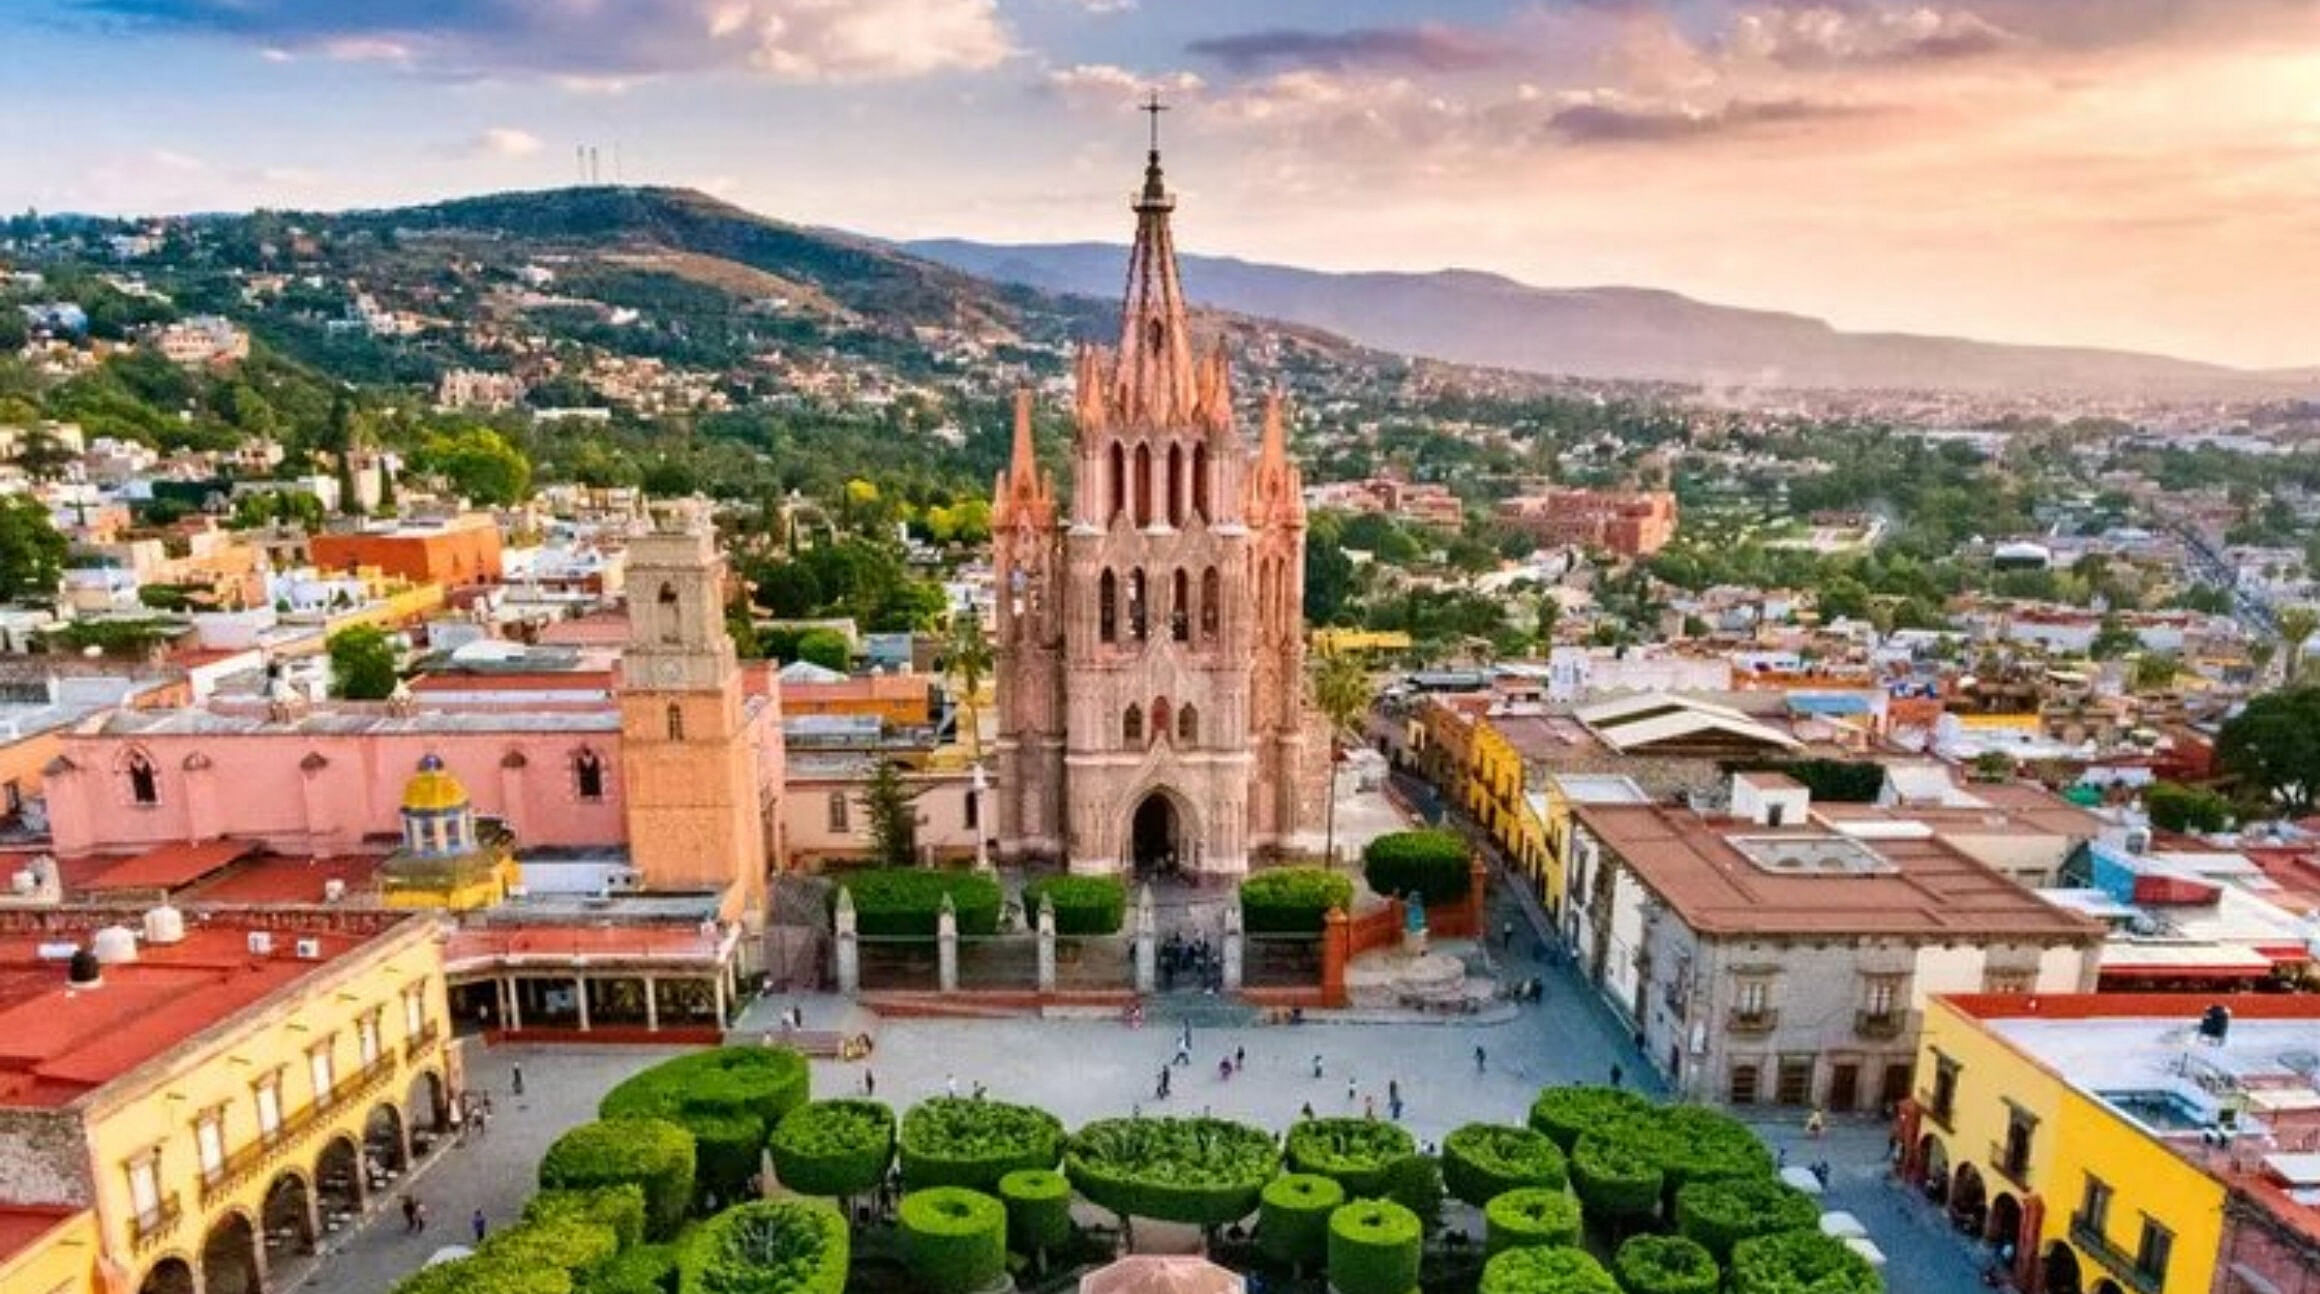 Pink cathedral in San Miguel de Allende, Mexico